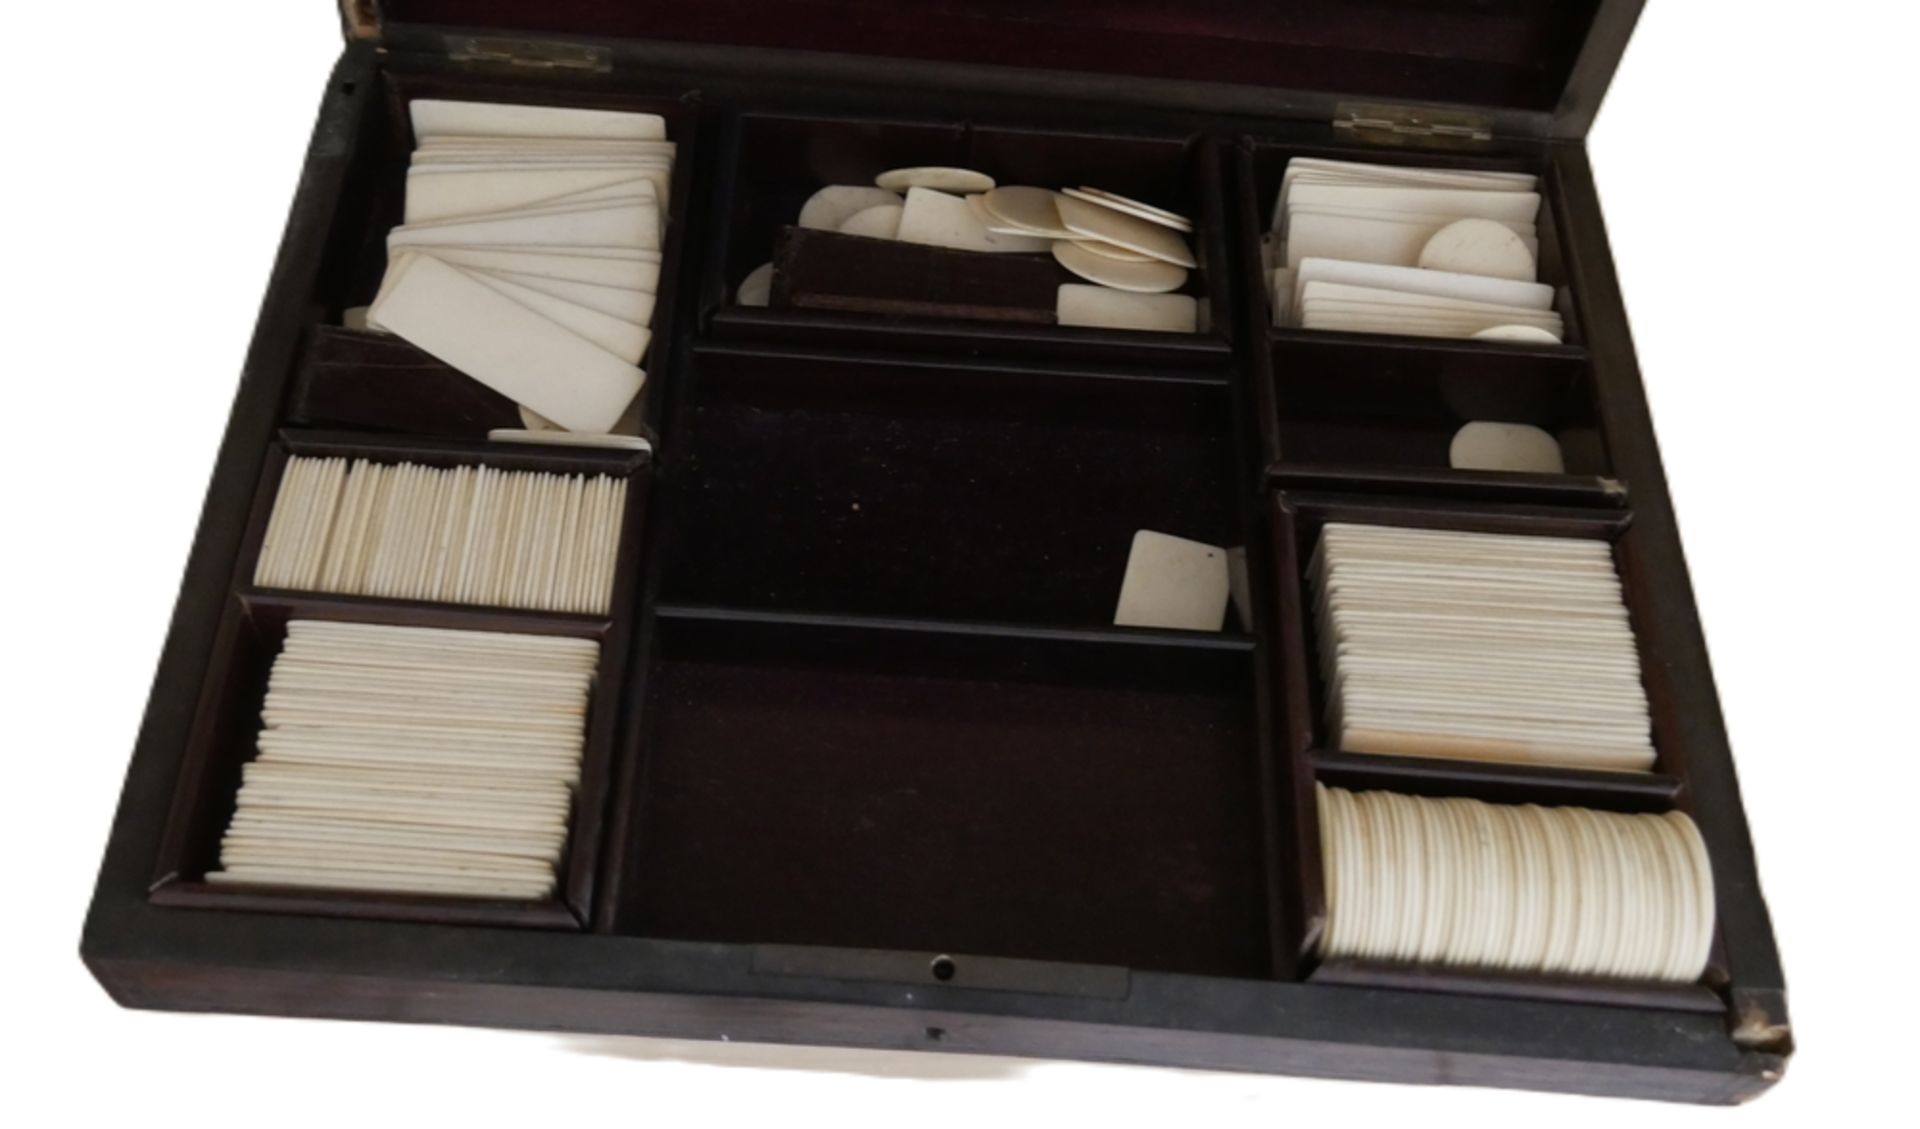 Token - Box Loupe de Thuja Napoleon III. Antikes Spiel, 19. Jahrhundert. Box weißt beschädigungen